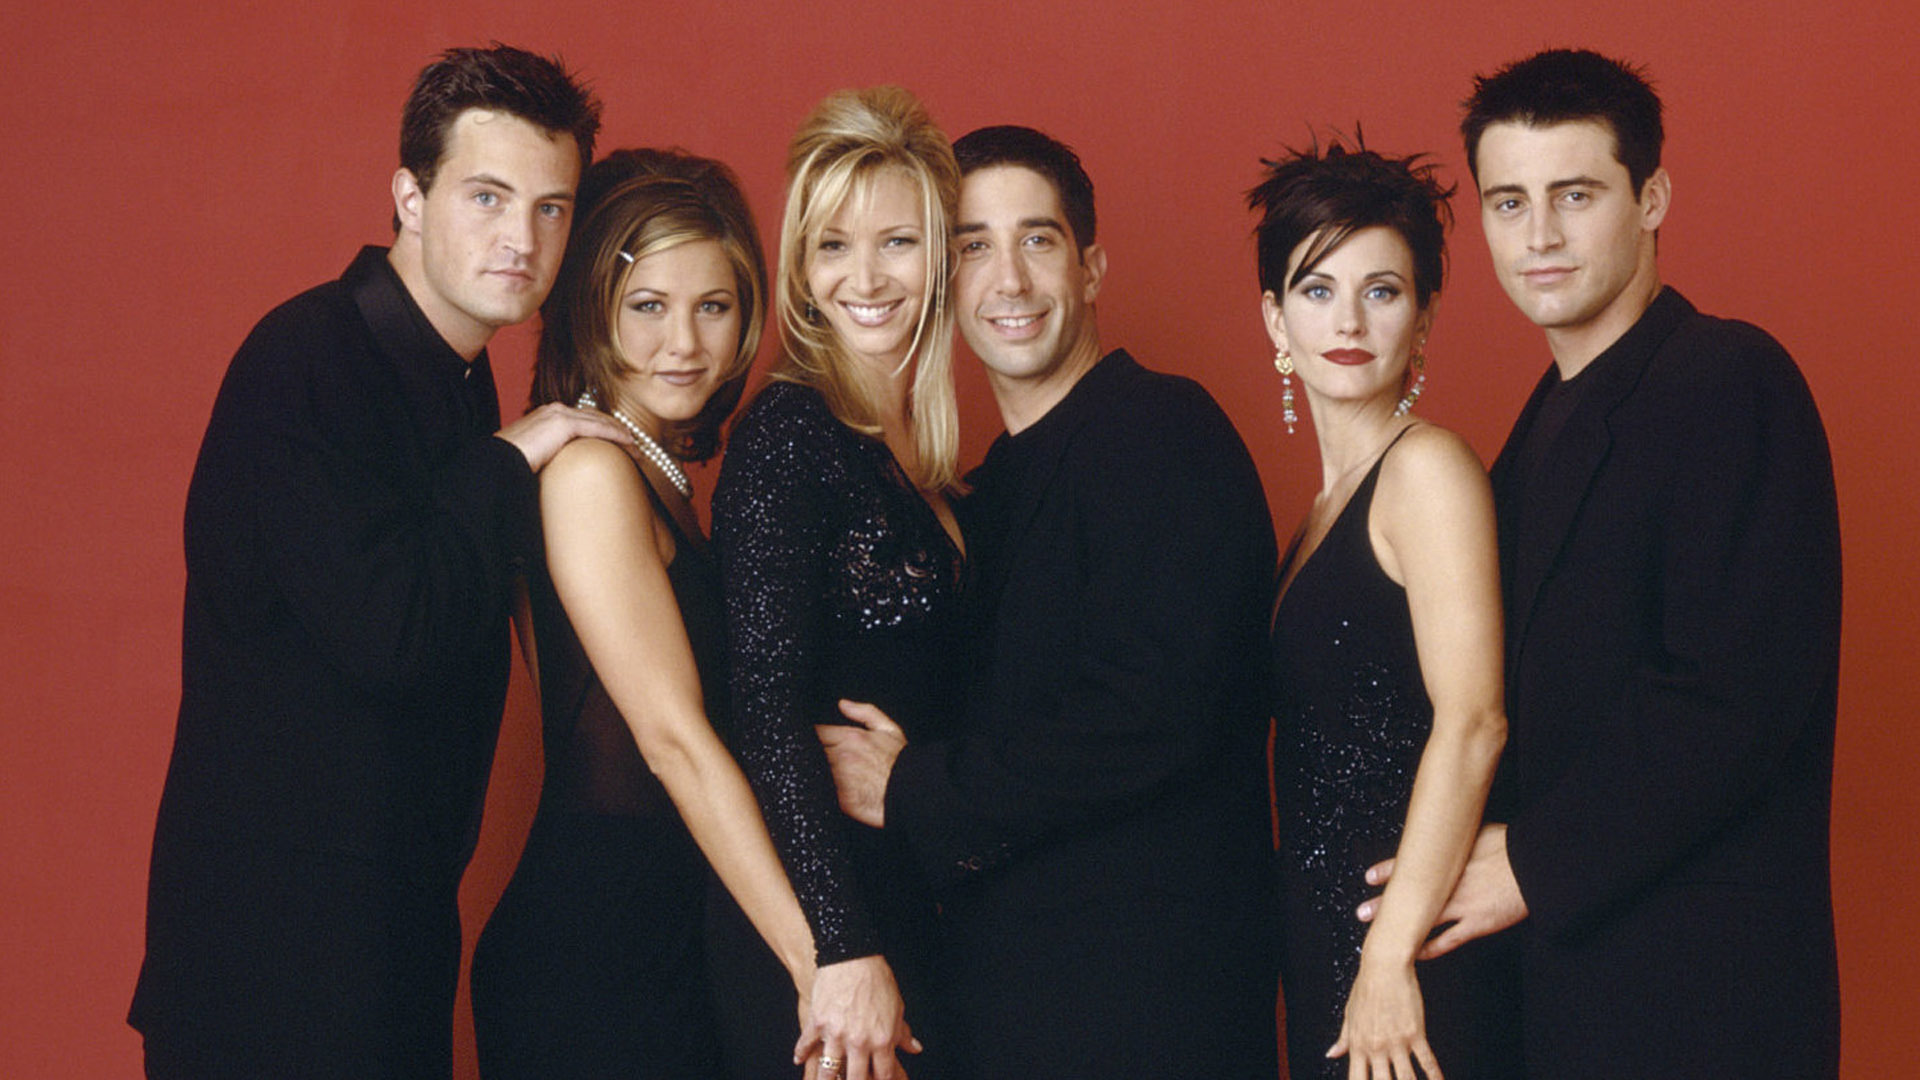 La edad de los actores de 'Friends' cuando empezó la serie